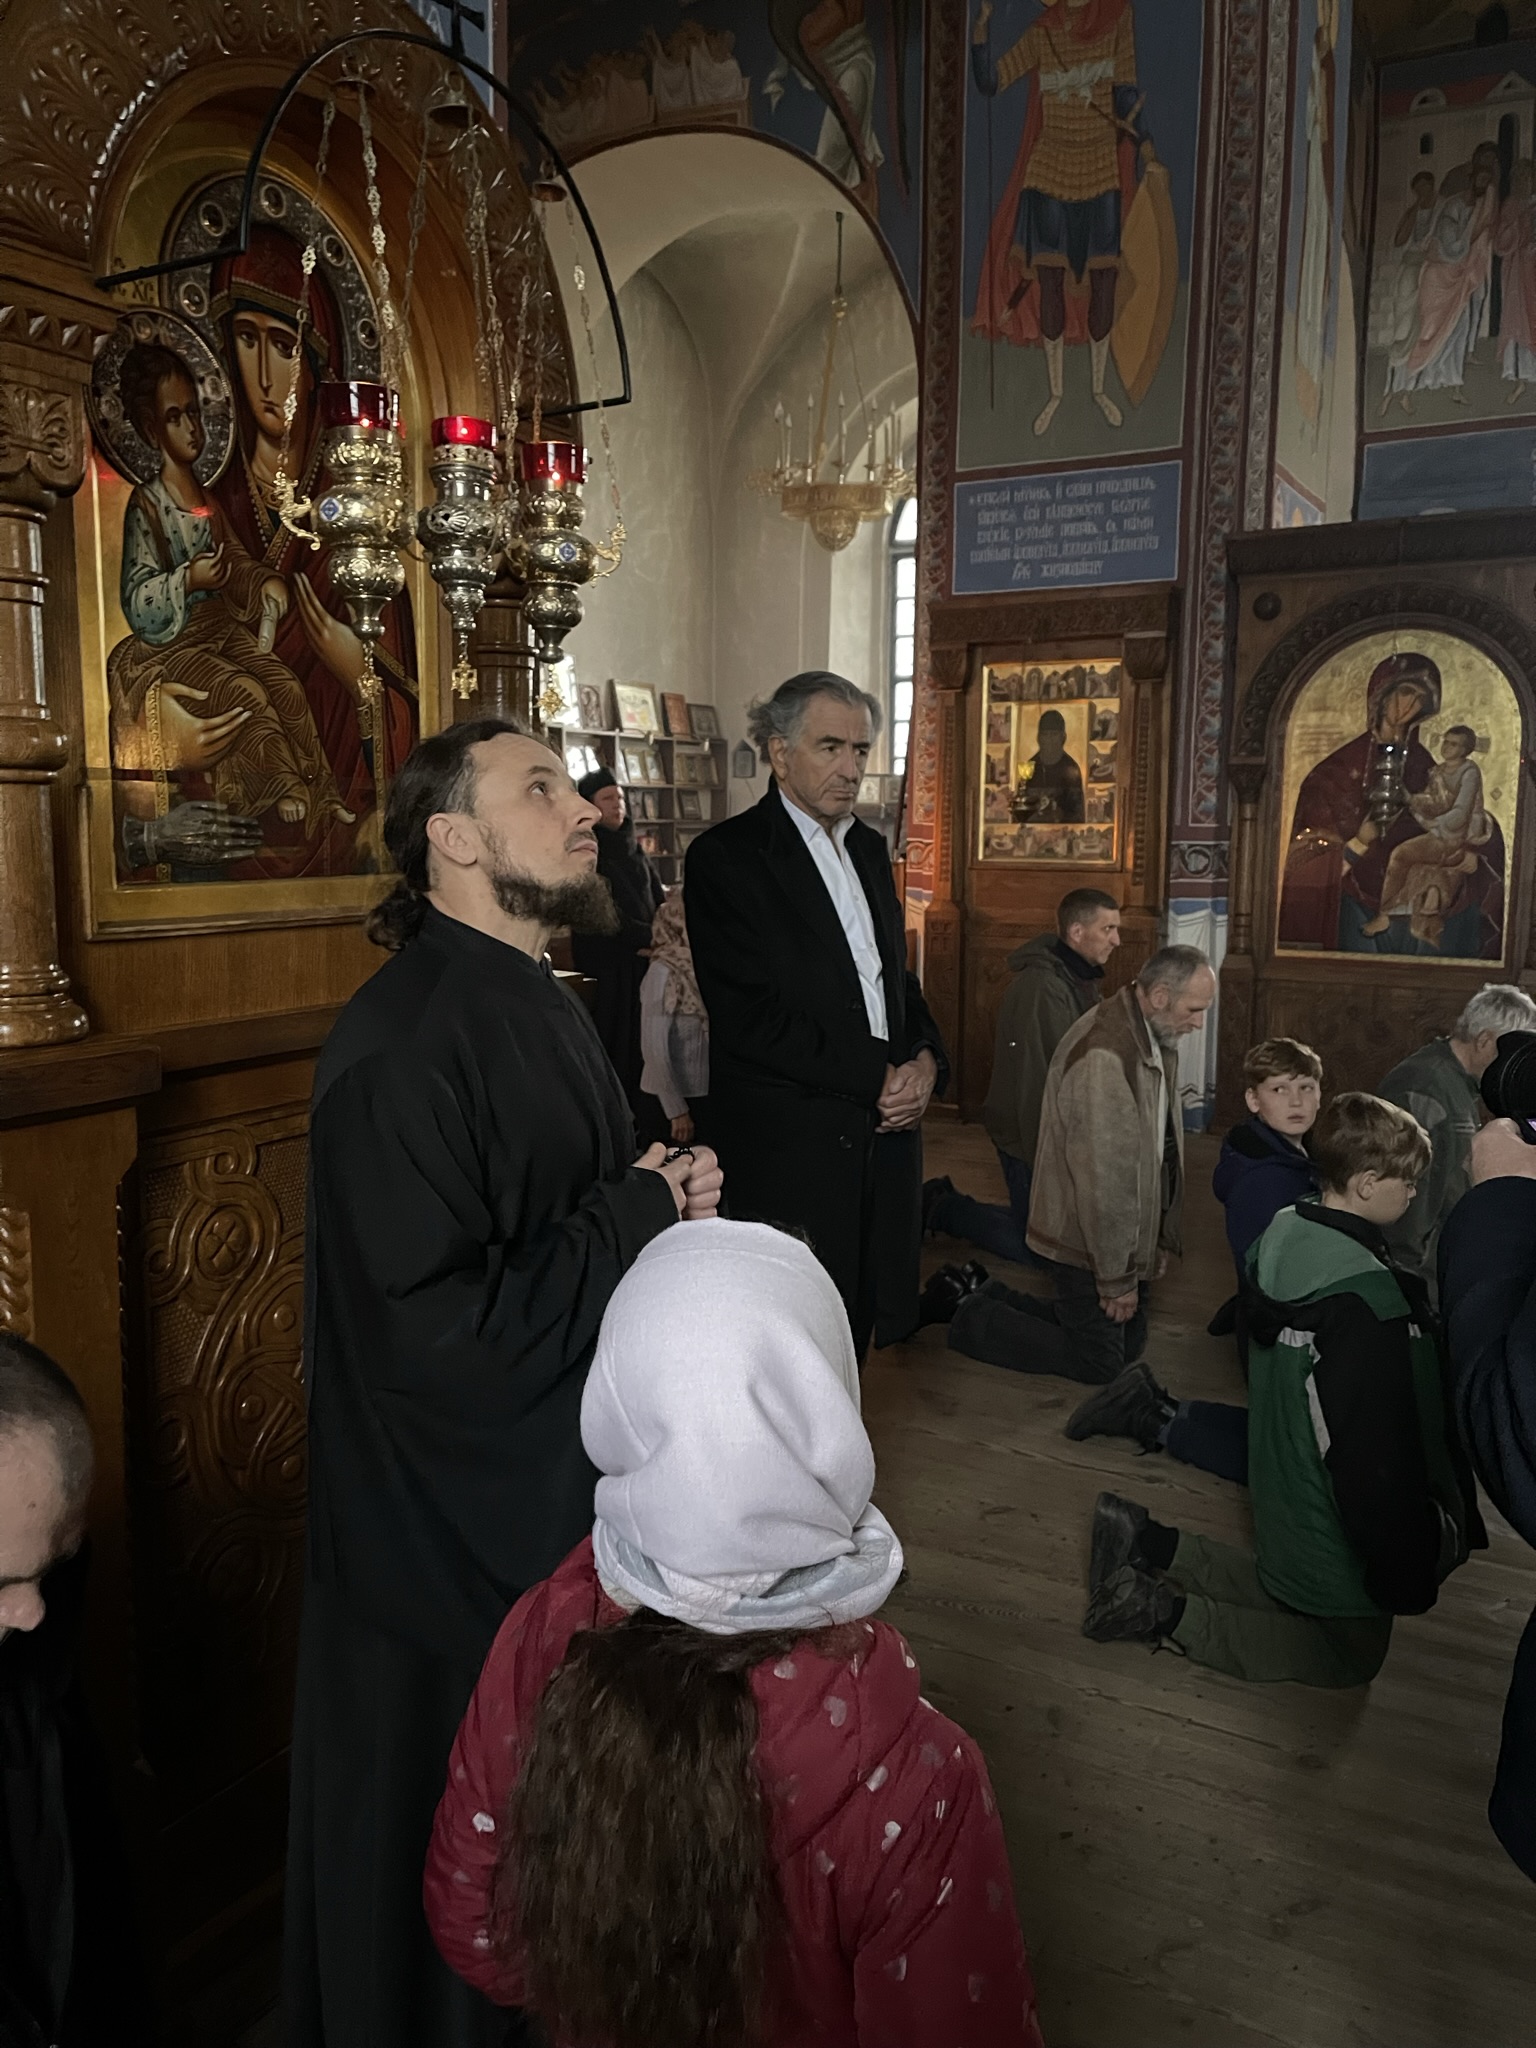 Bernard-Henri Lévy dans un monastère orthodoxe en Ukraine. Il est entouré des fidèles qui prient.